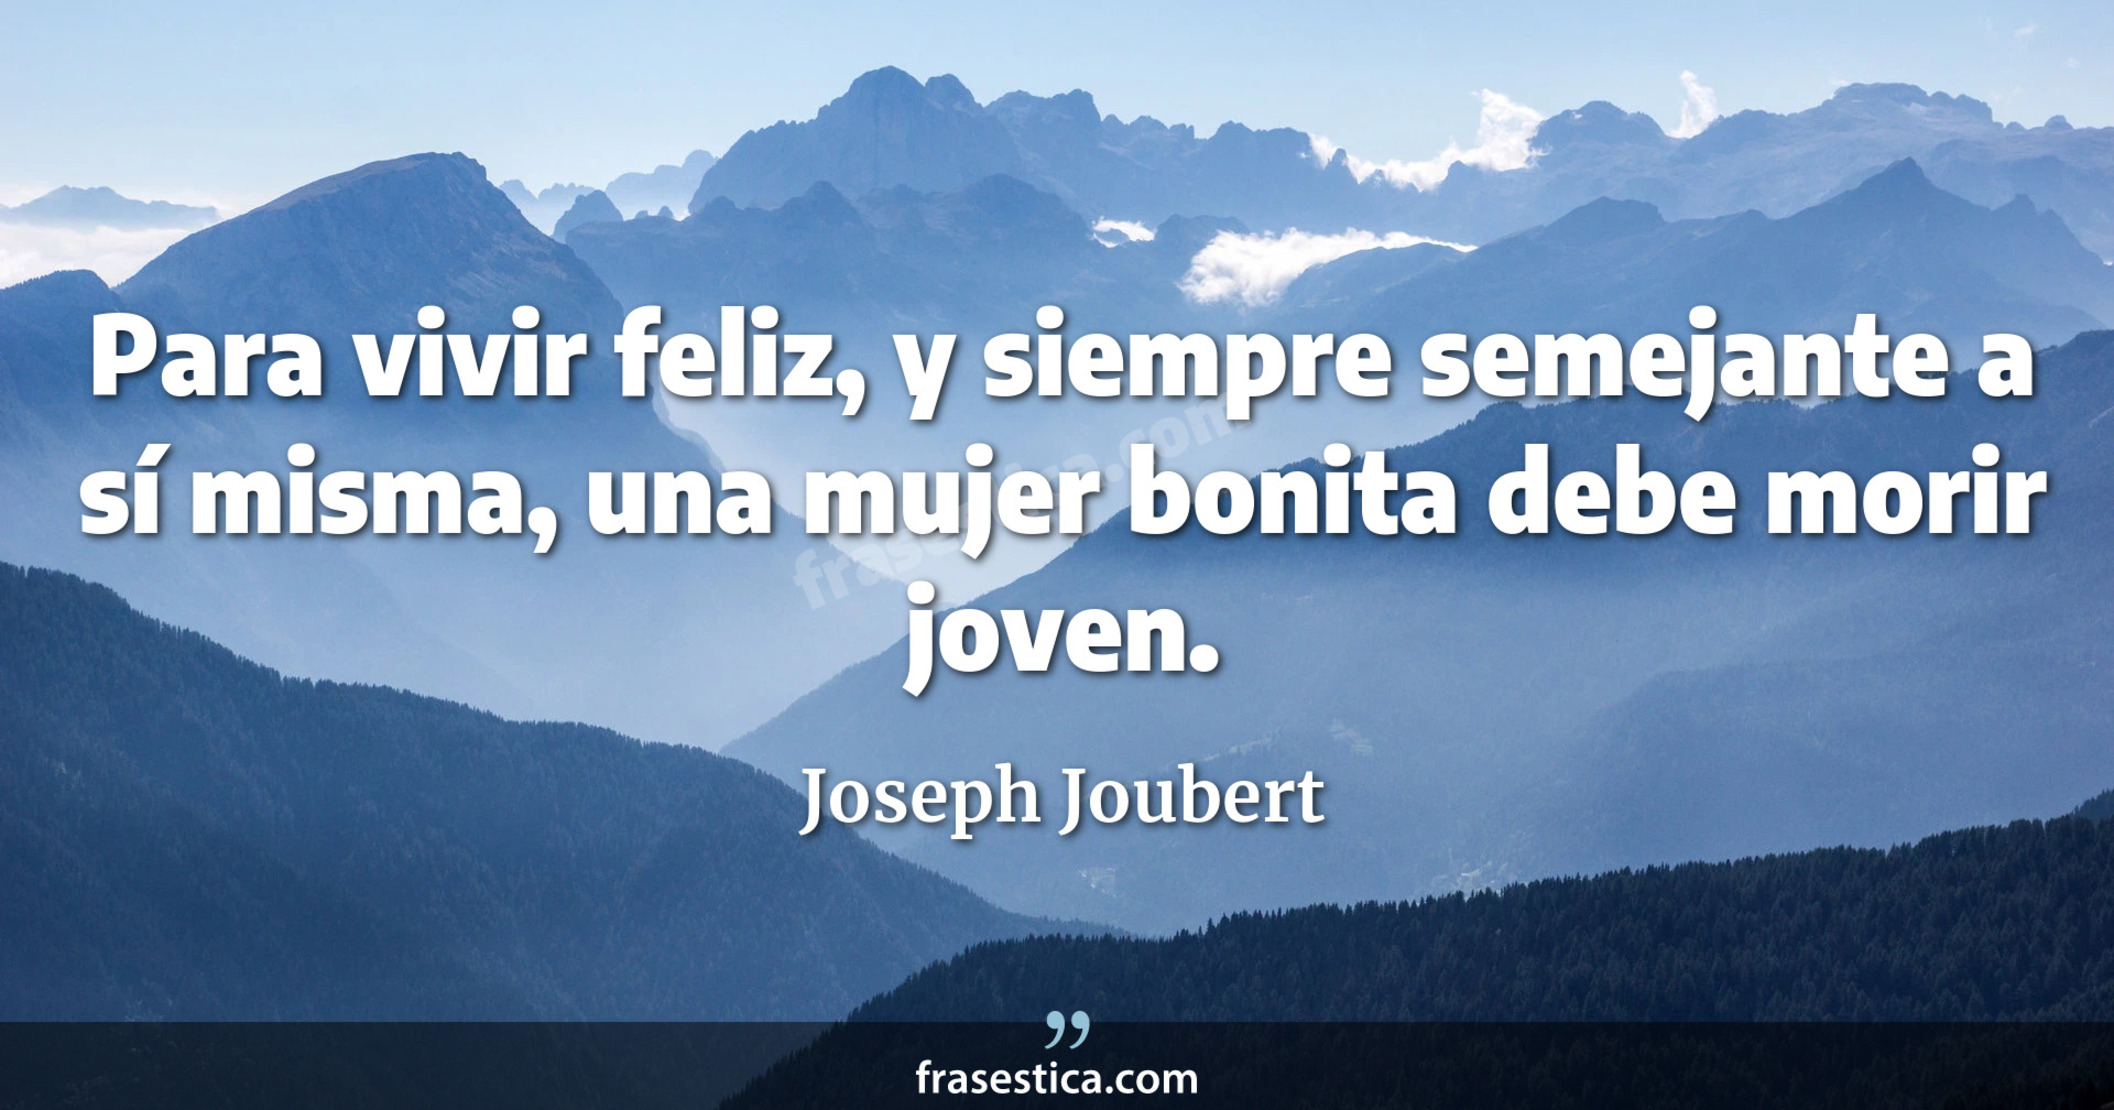 Para vivir feliz, y siempre semejante a sí misma, una mujer bonita debe morir joven. - Joseph Joubert